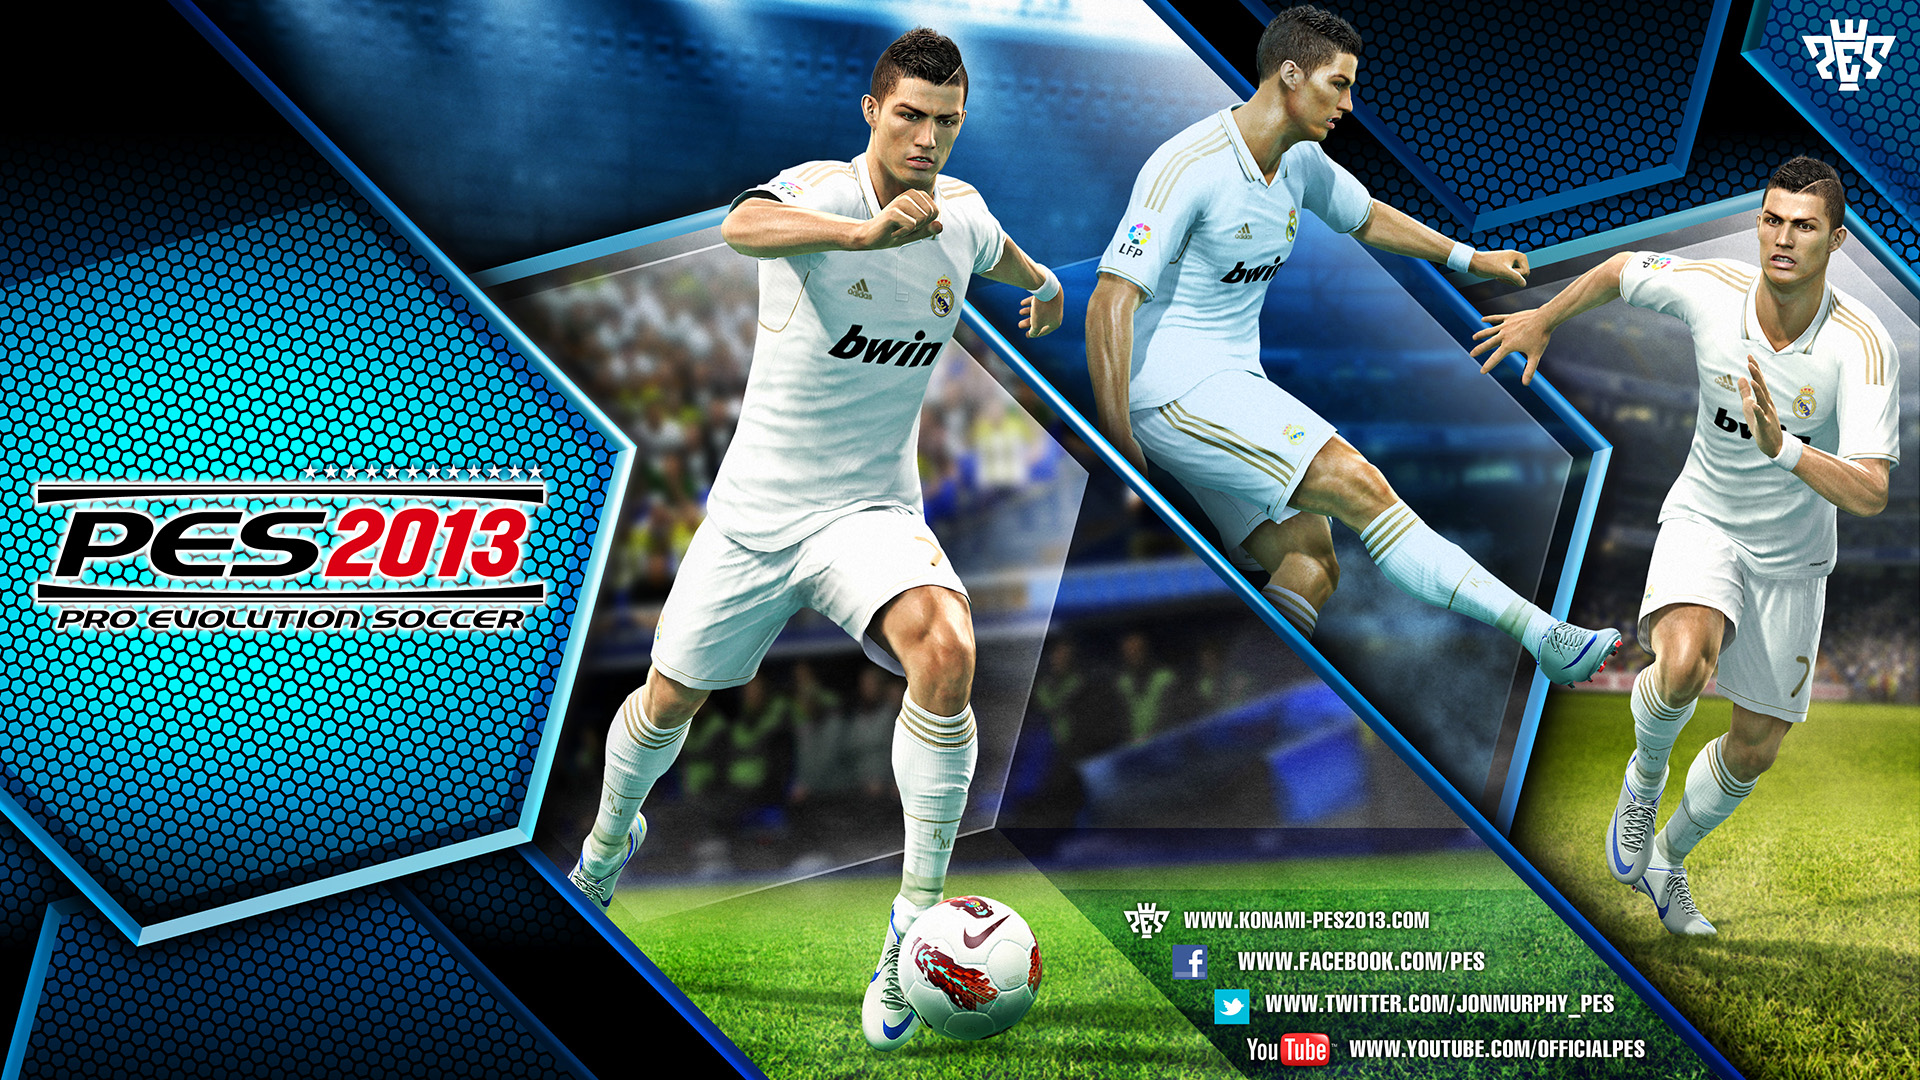 Cristiano Ronaldo será la estrella del Pro Evolution Soccer 2013. Foto: Konami.com